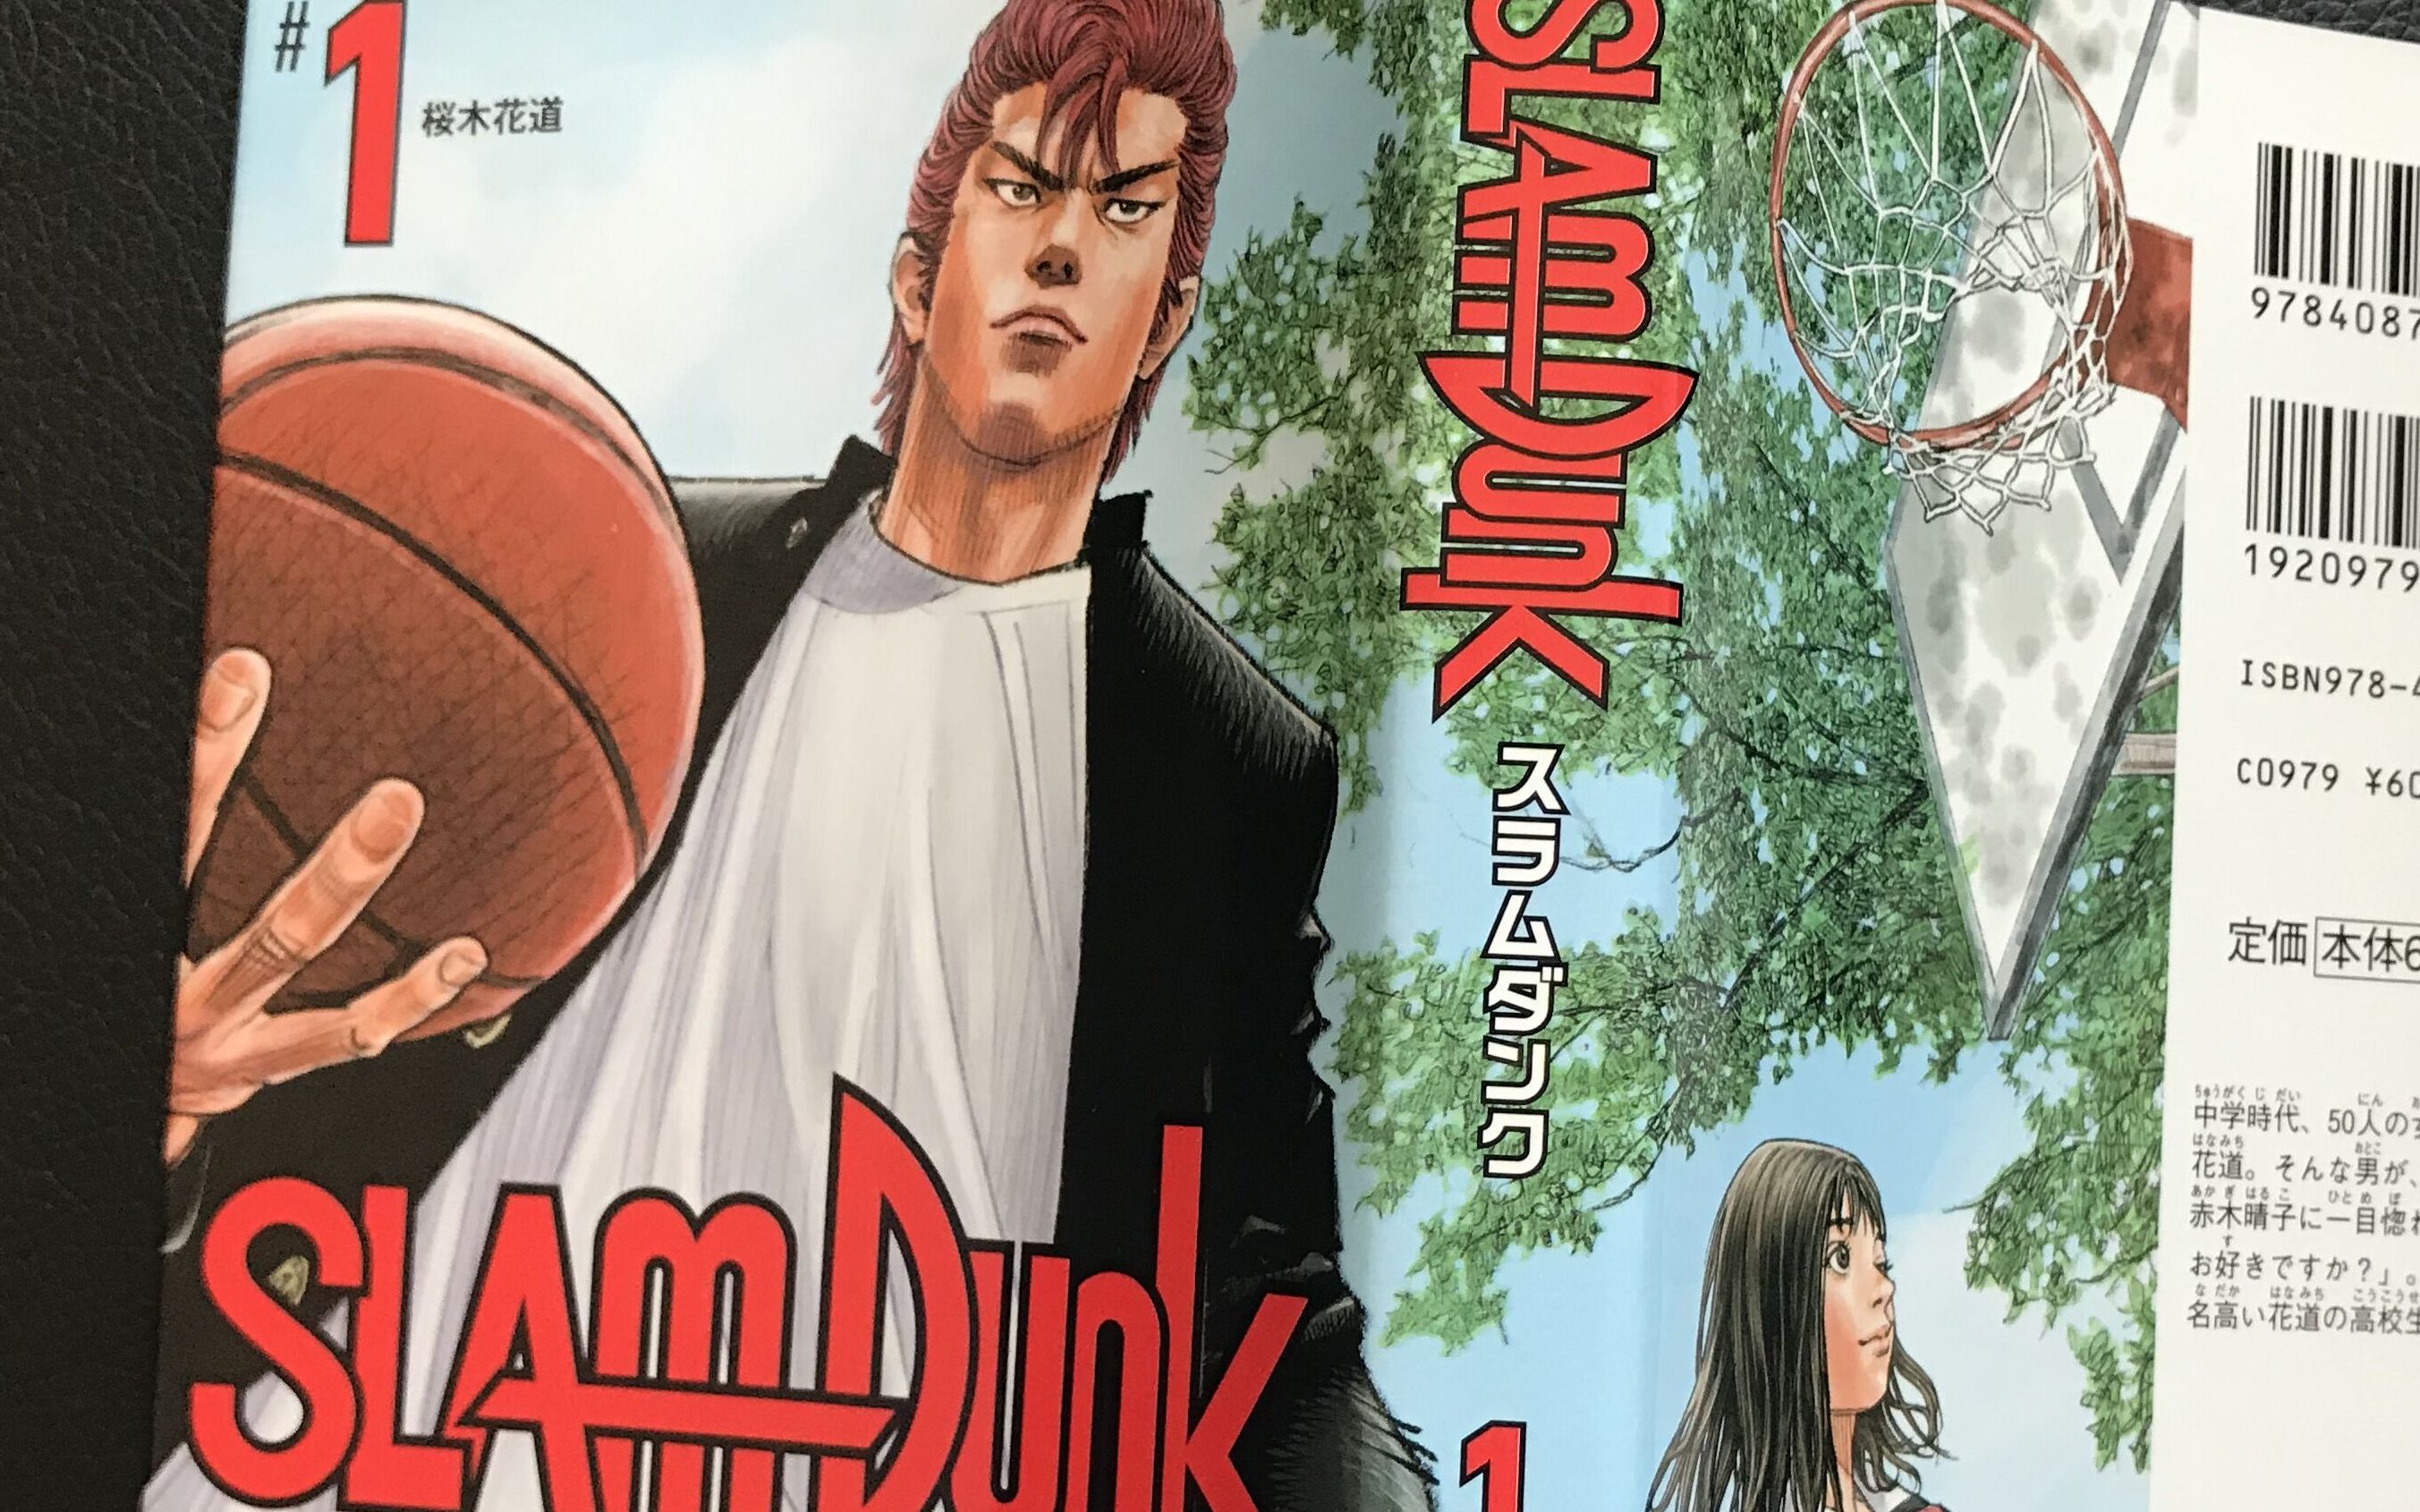 阅读日文原版漫画学日语 灌篮高手 Slam Dunk 第一册 ３ 哔哩哔哩 つロ干杯 Bilibili